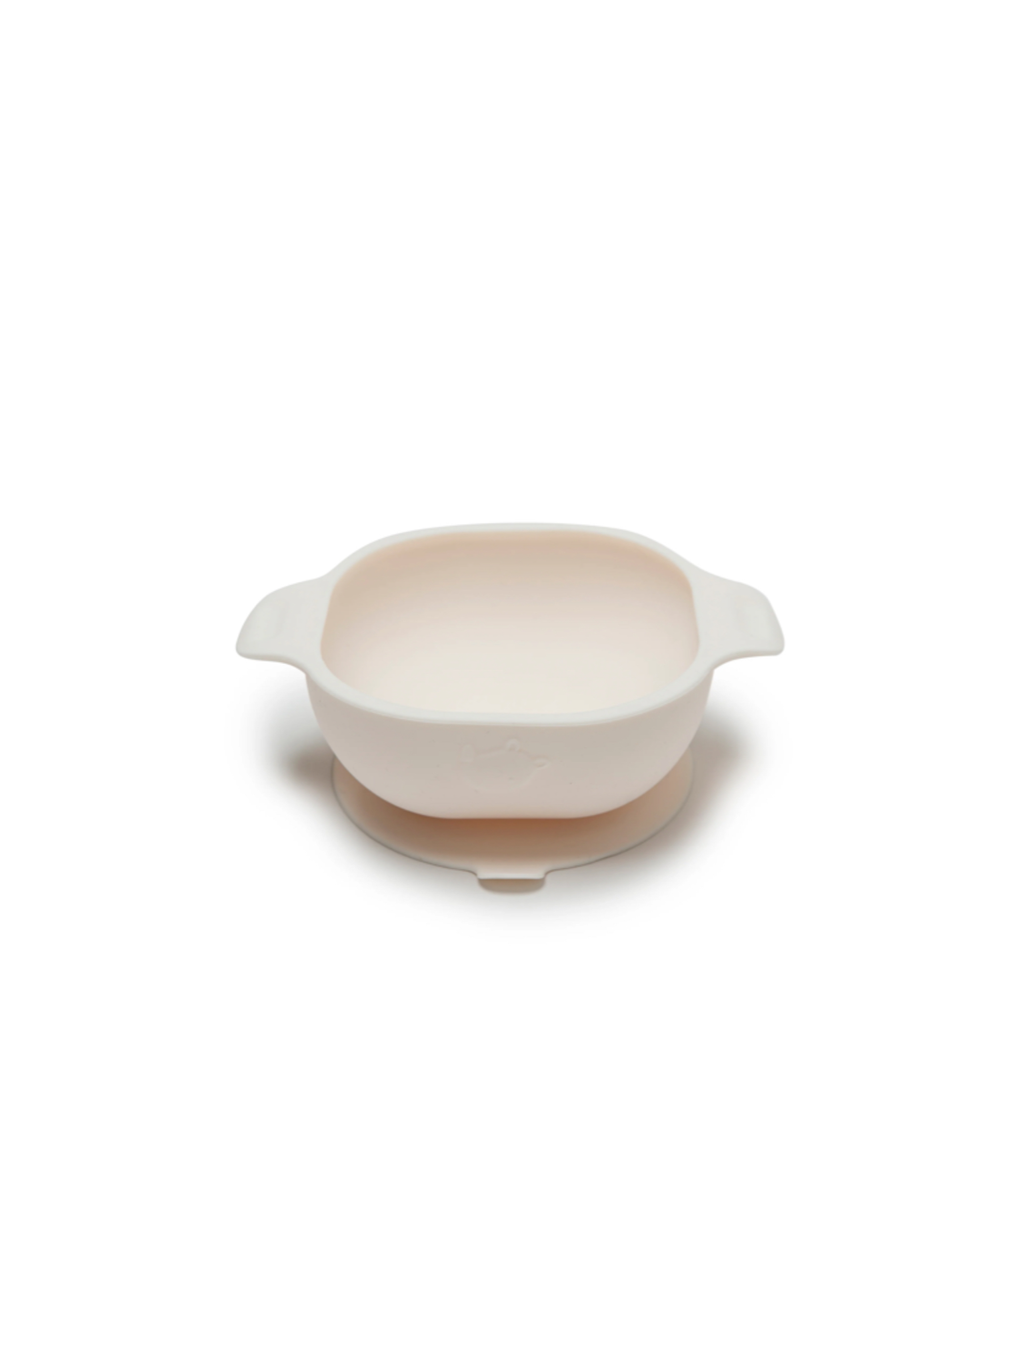 Silicone Bowl - Cream